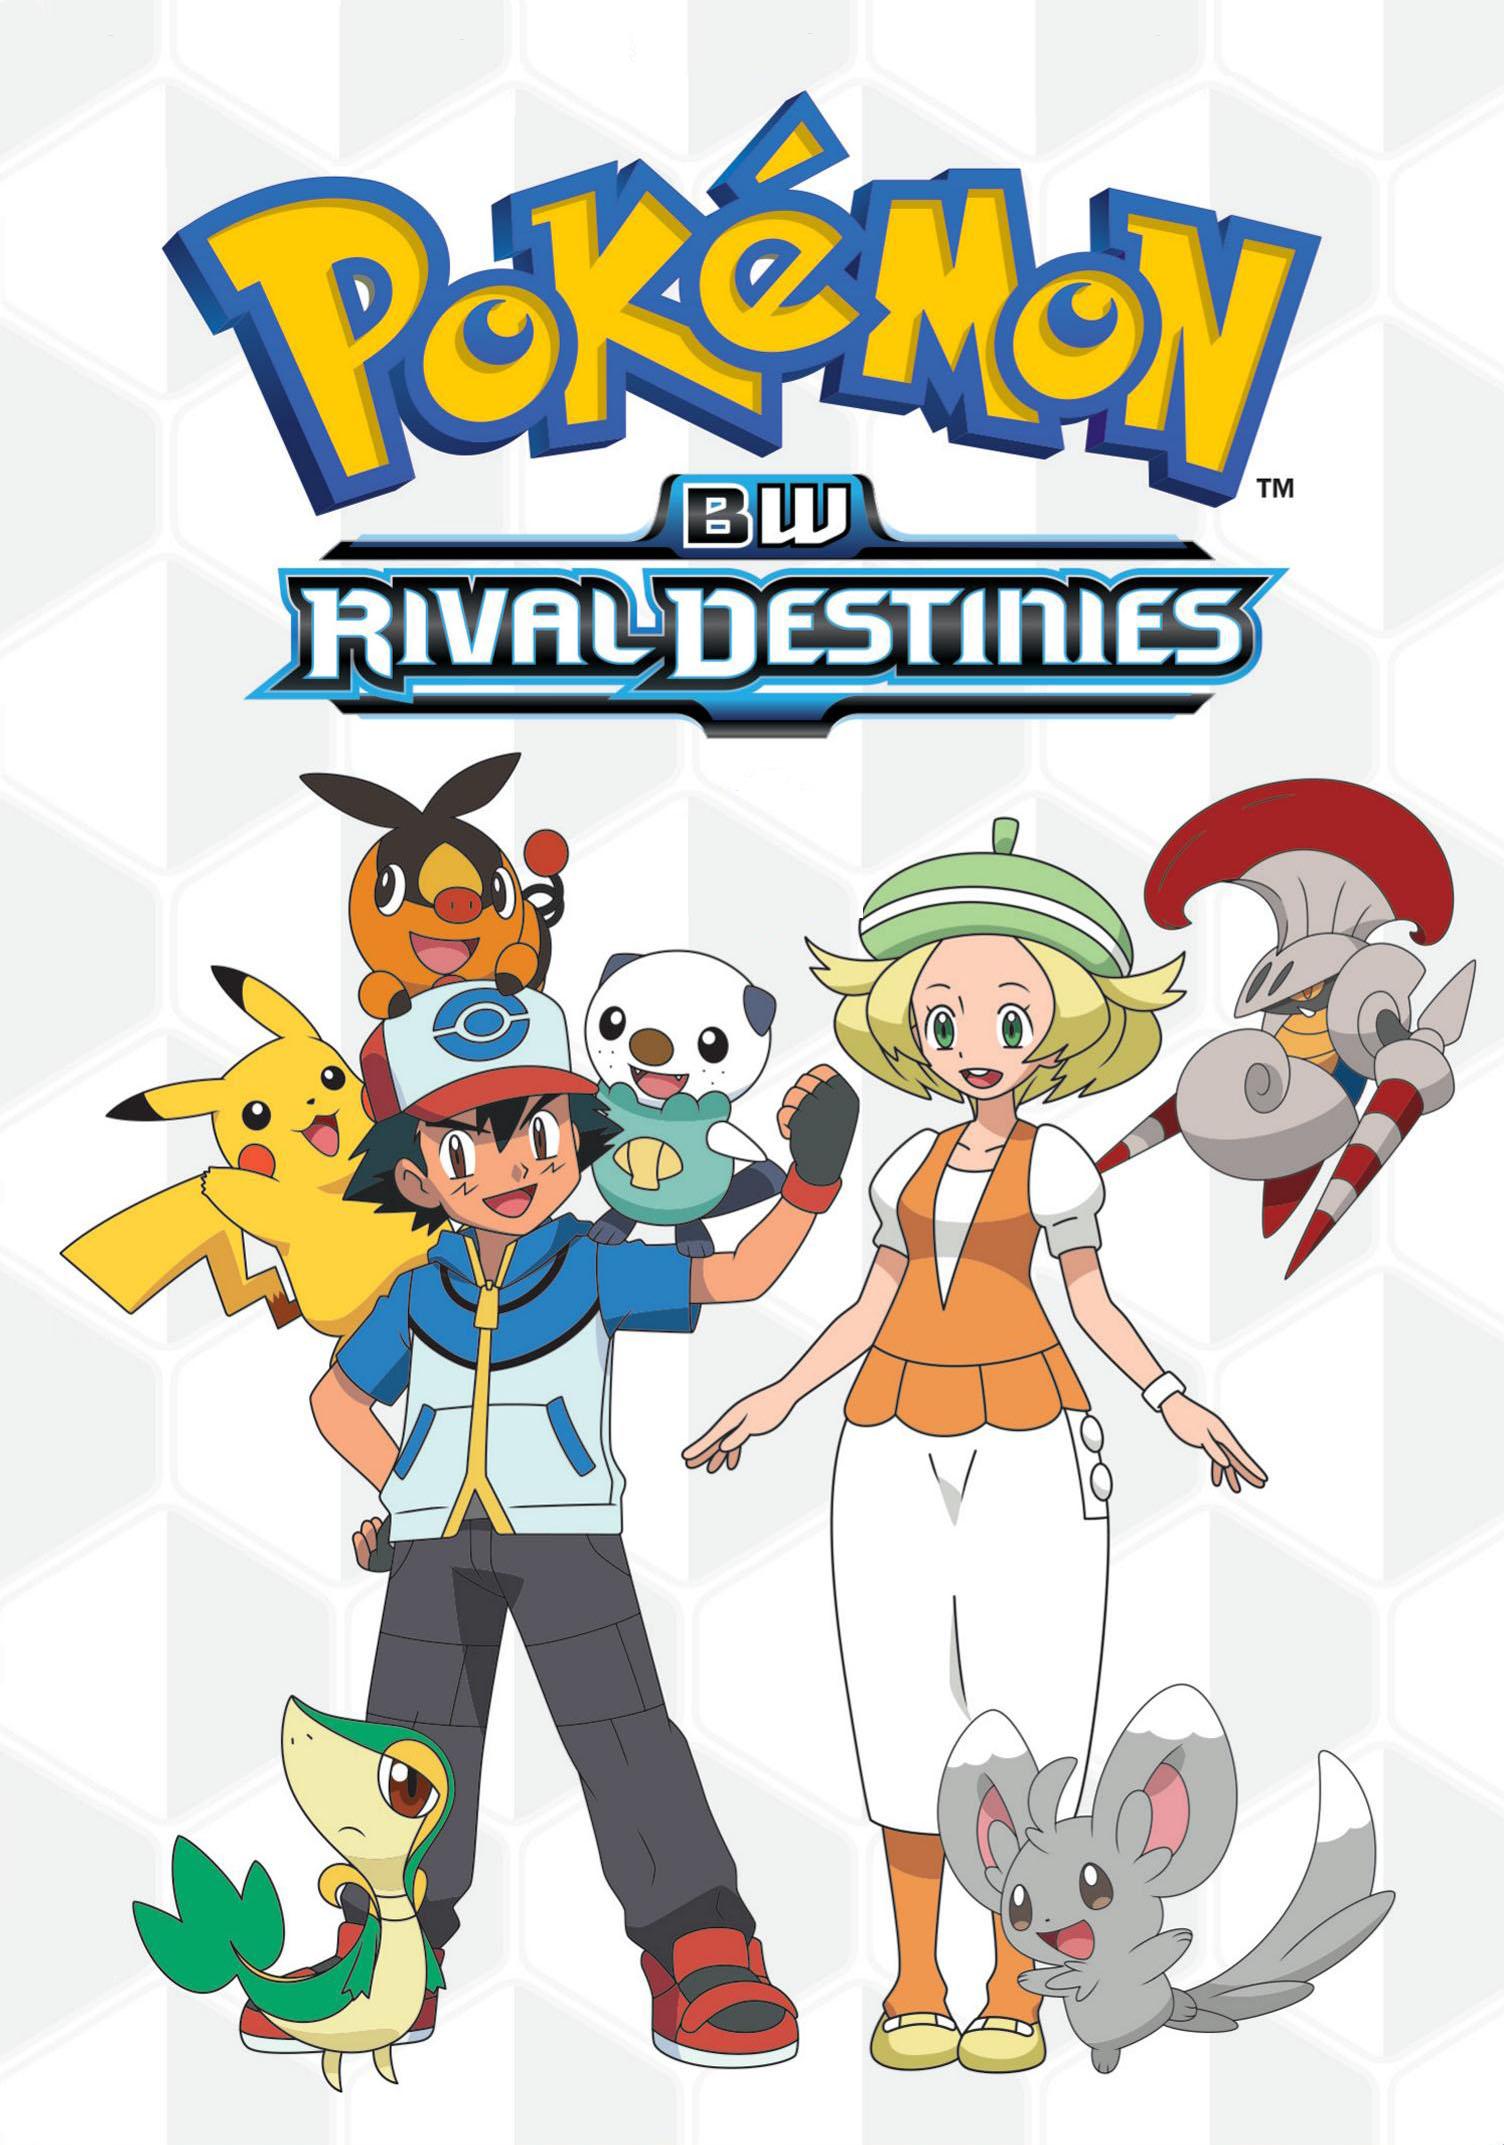 Pokémon 15: BW – Destinos Rivais – Dublado Todos os Episódios - Anime HD -  Animes Online Gratis!